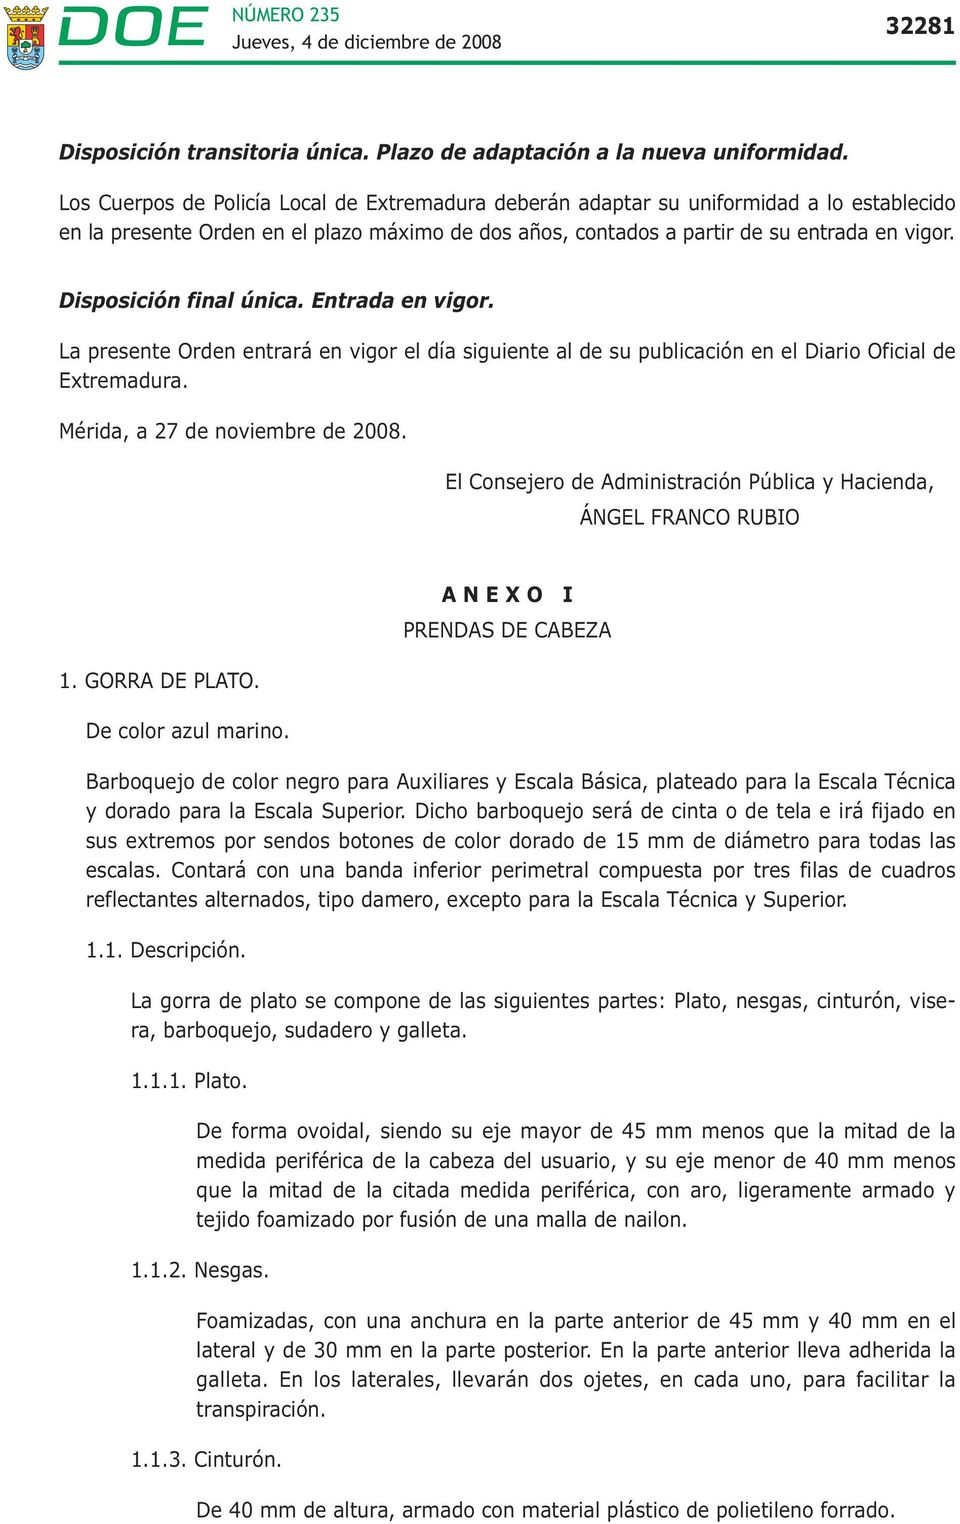 Disposición final única. Entrada en vigor. La presente Orden entrará en vigor el día siguiente al de su publicación en el Diario Oficial de Extremadura. Mérida, a 27 de noviembre de 2008.